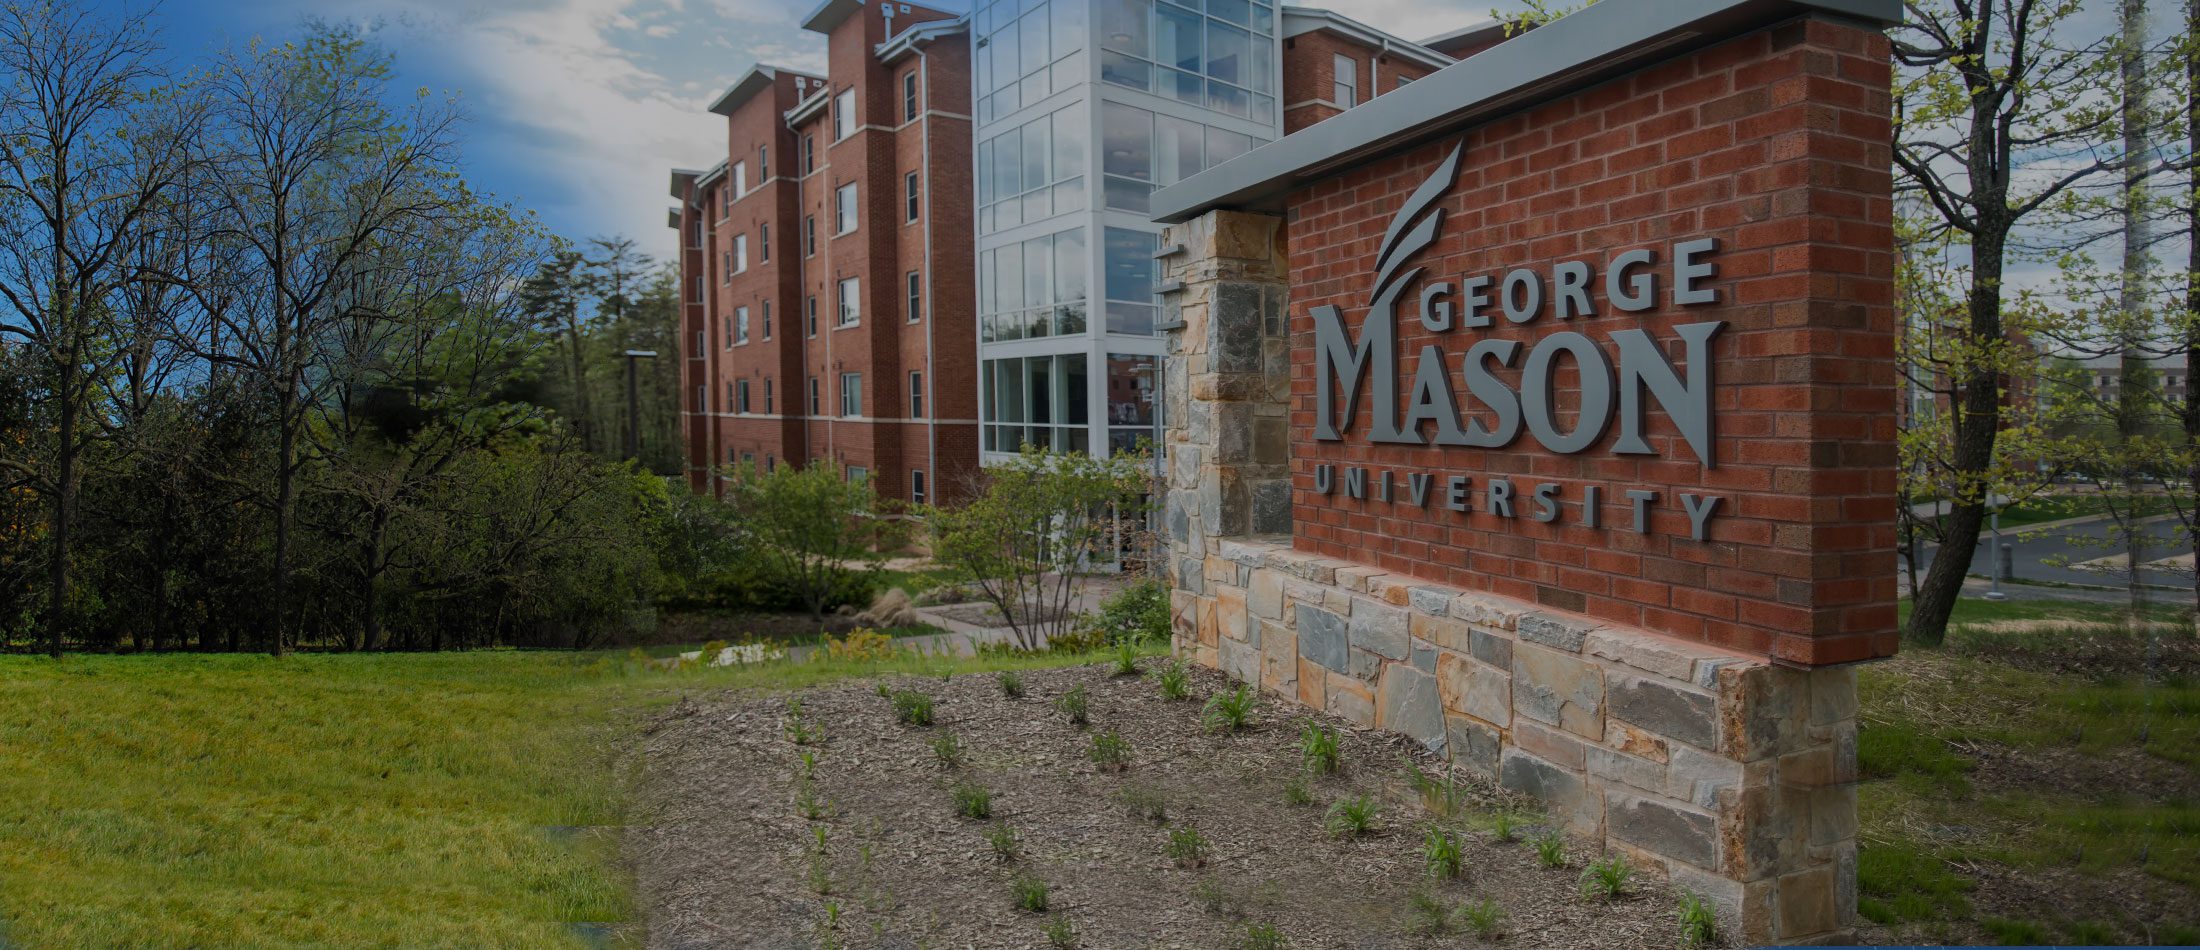 george-mason-university